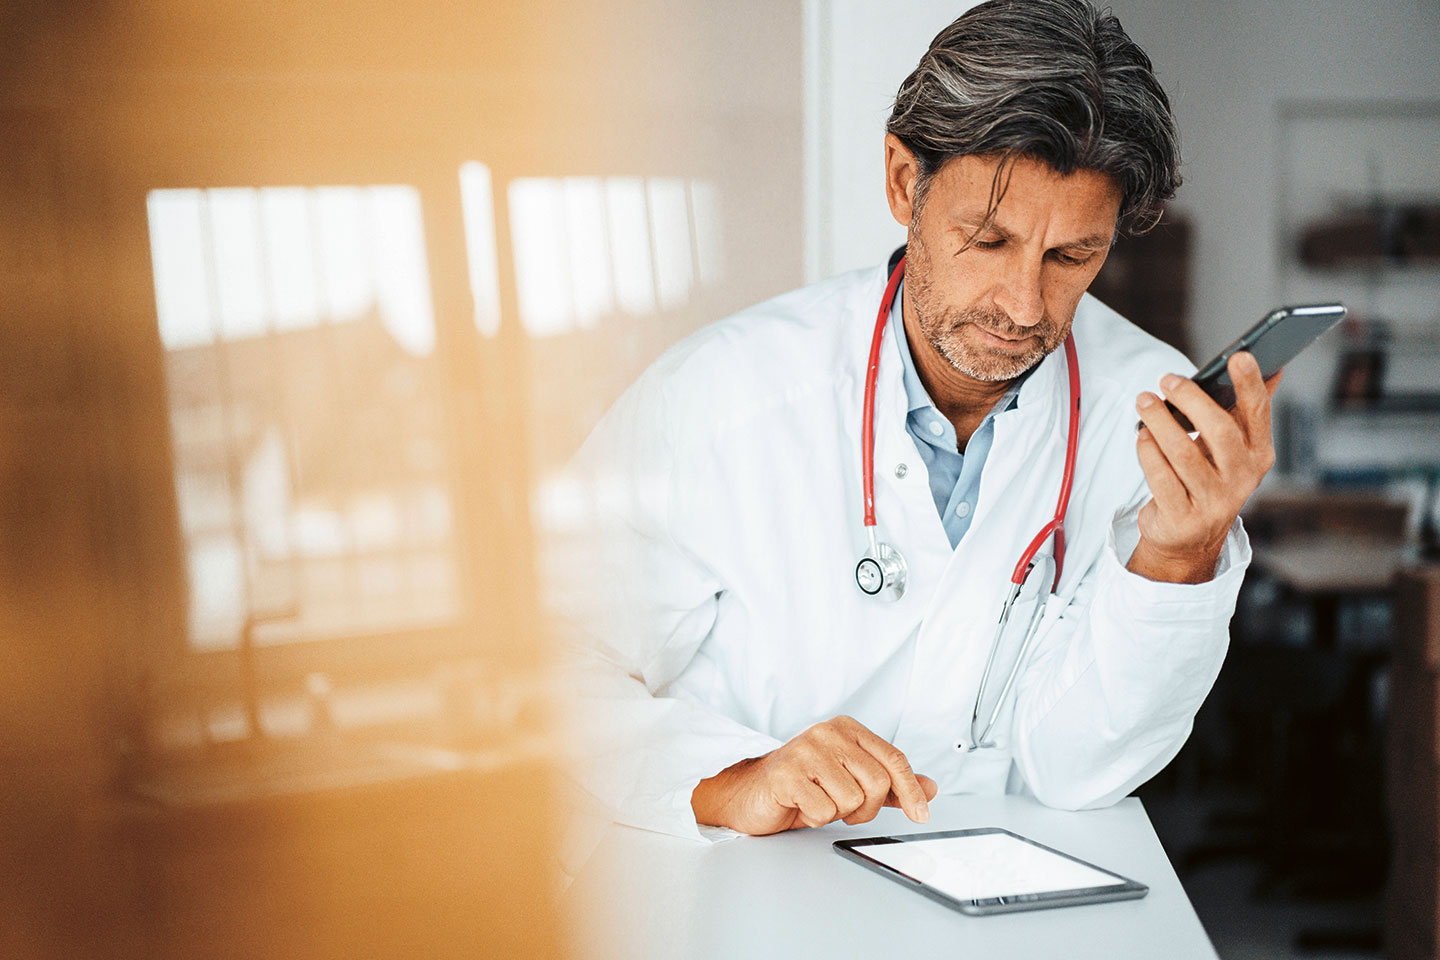 Foto: Ein Mann im Arztkittel tippt auf einem Tablet, hält ein Smartphone in der Hand und trägt ein Stethoskop um den Hals.